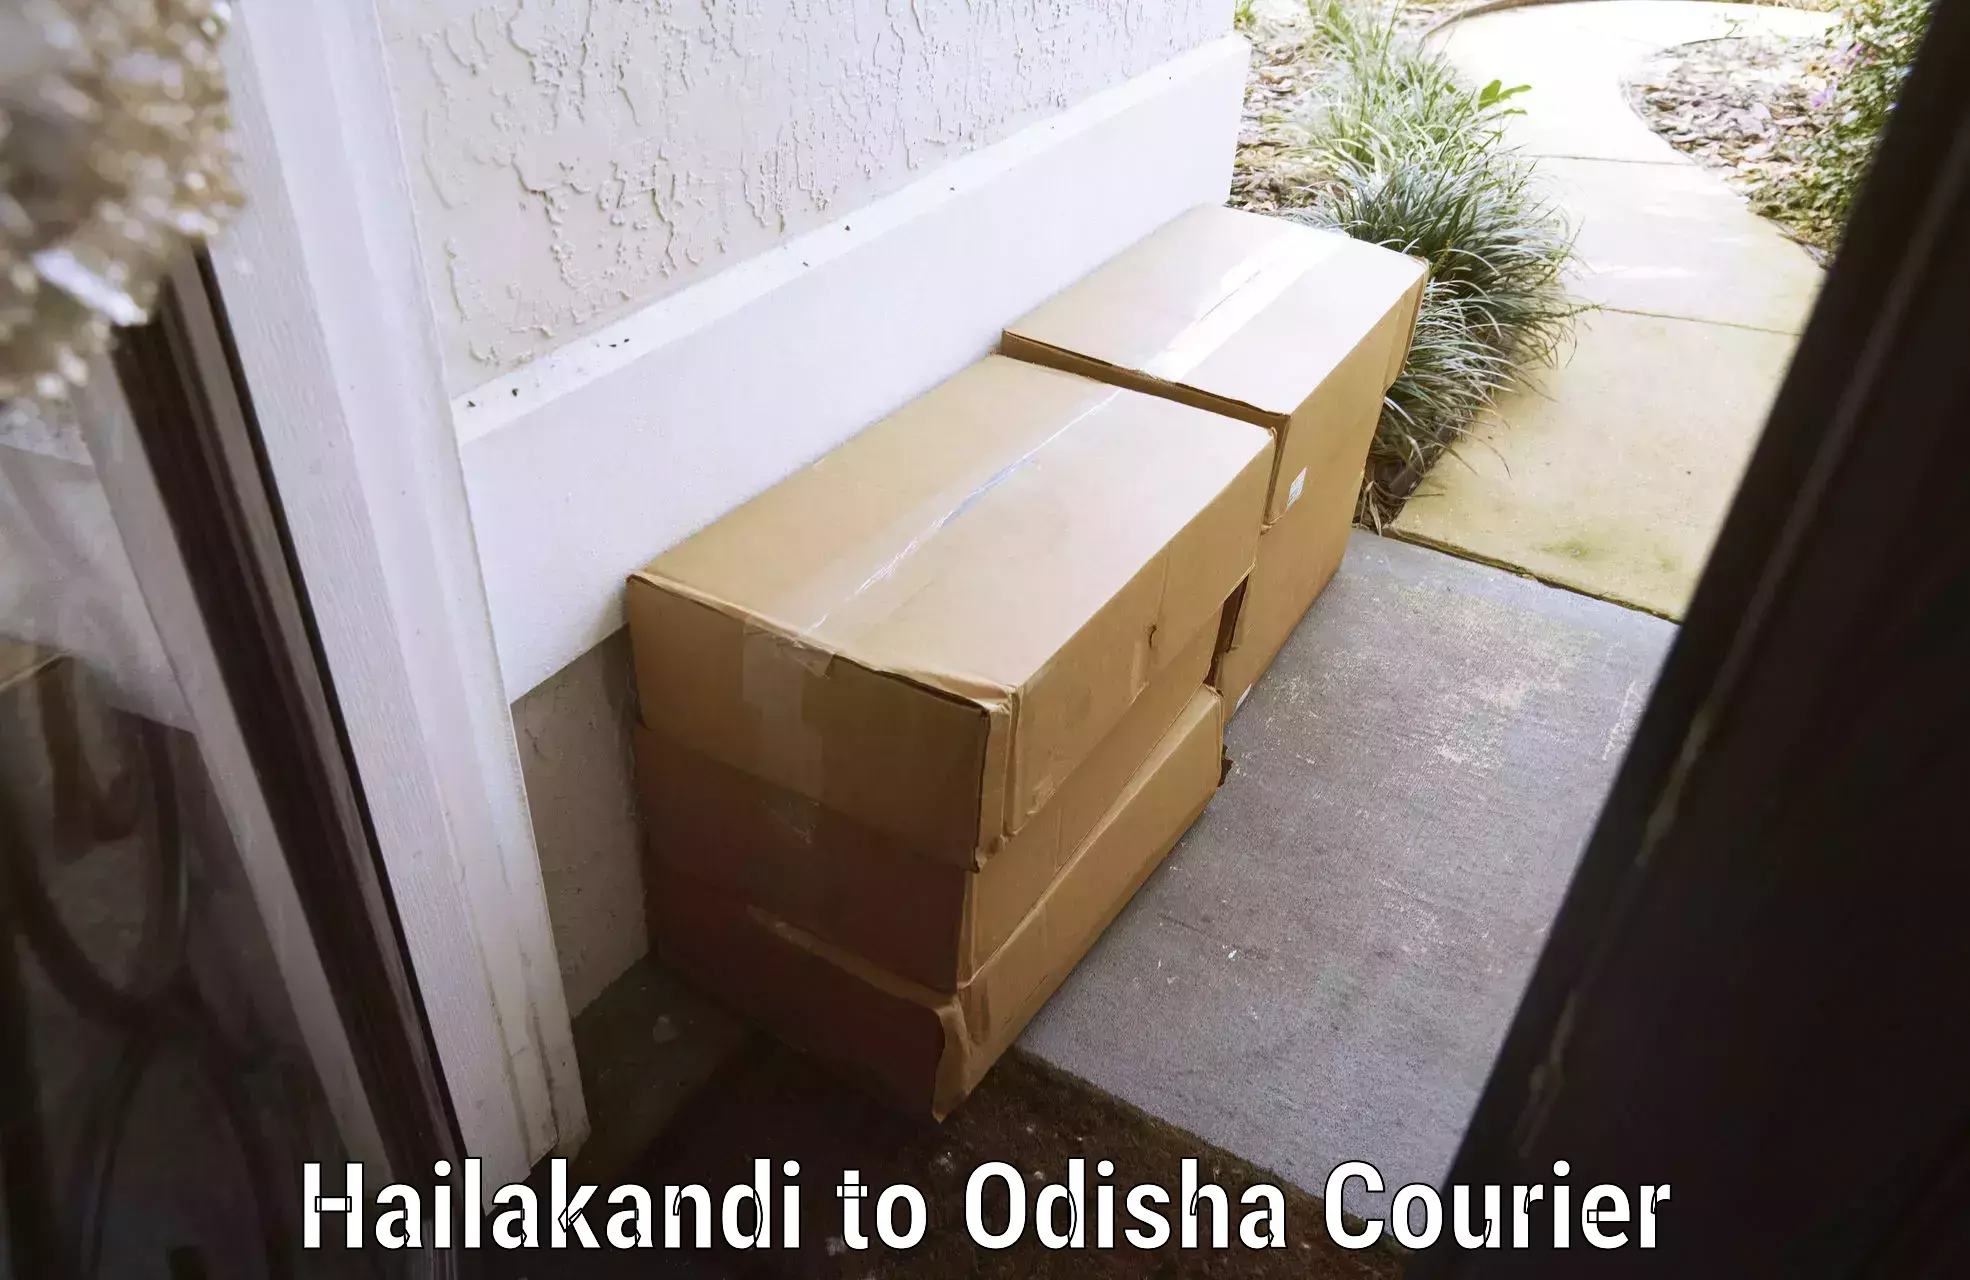 Luggage dispatch service Hailakandi to Boudh